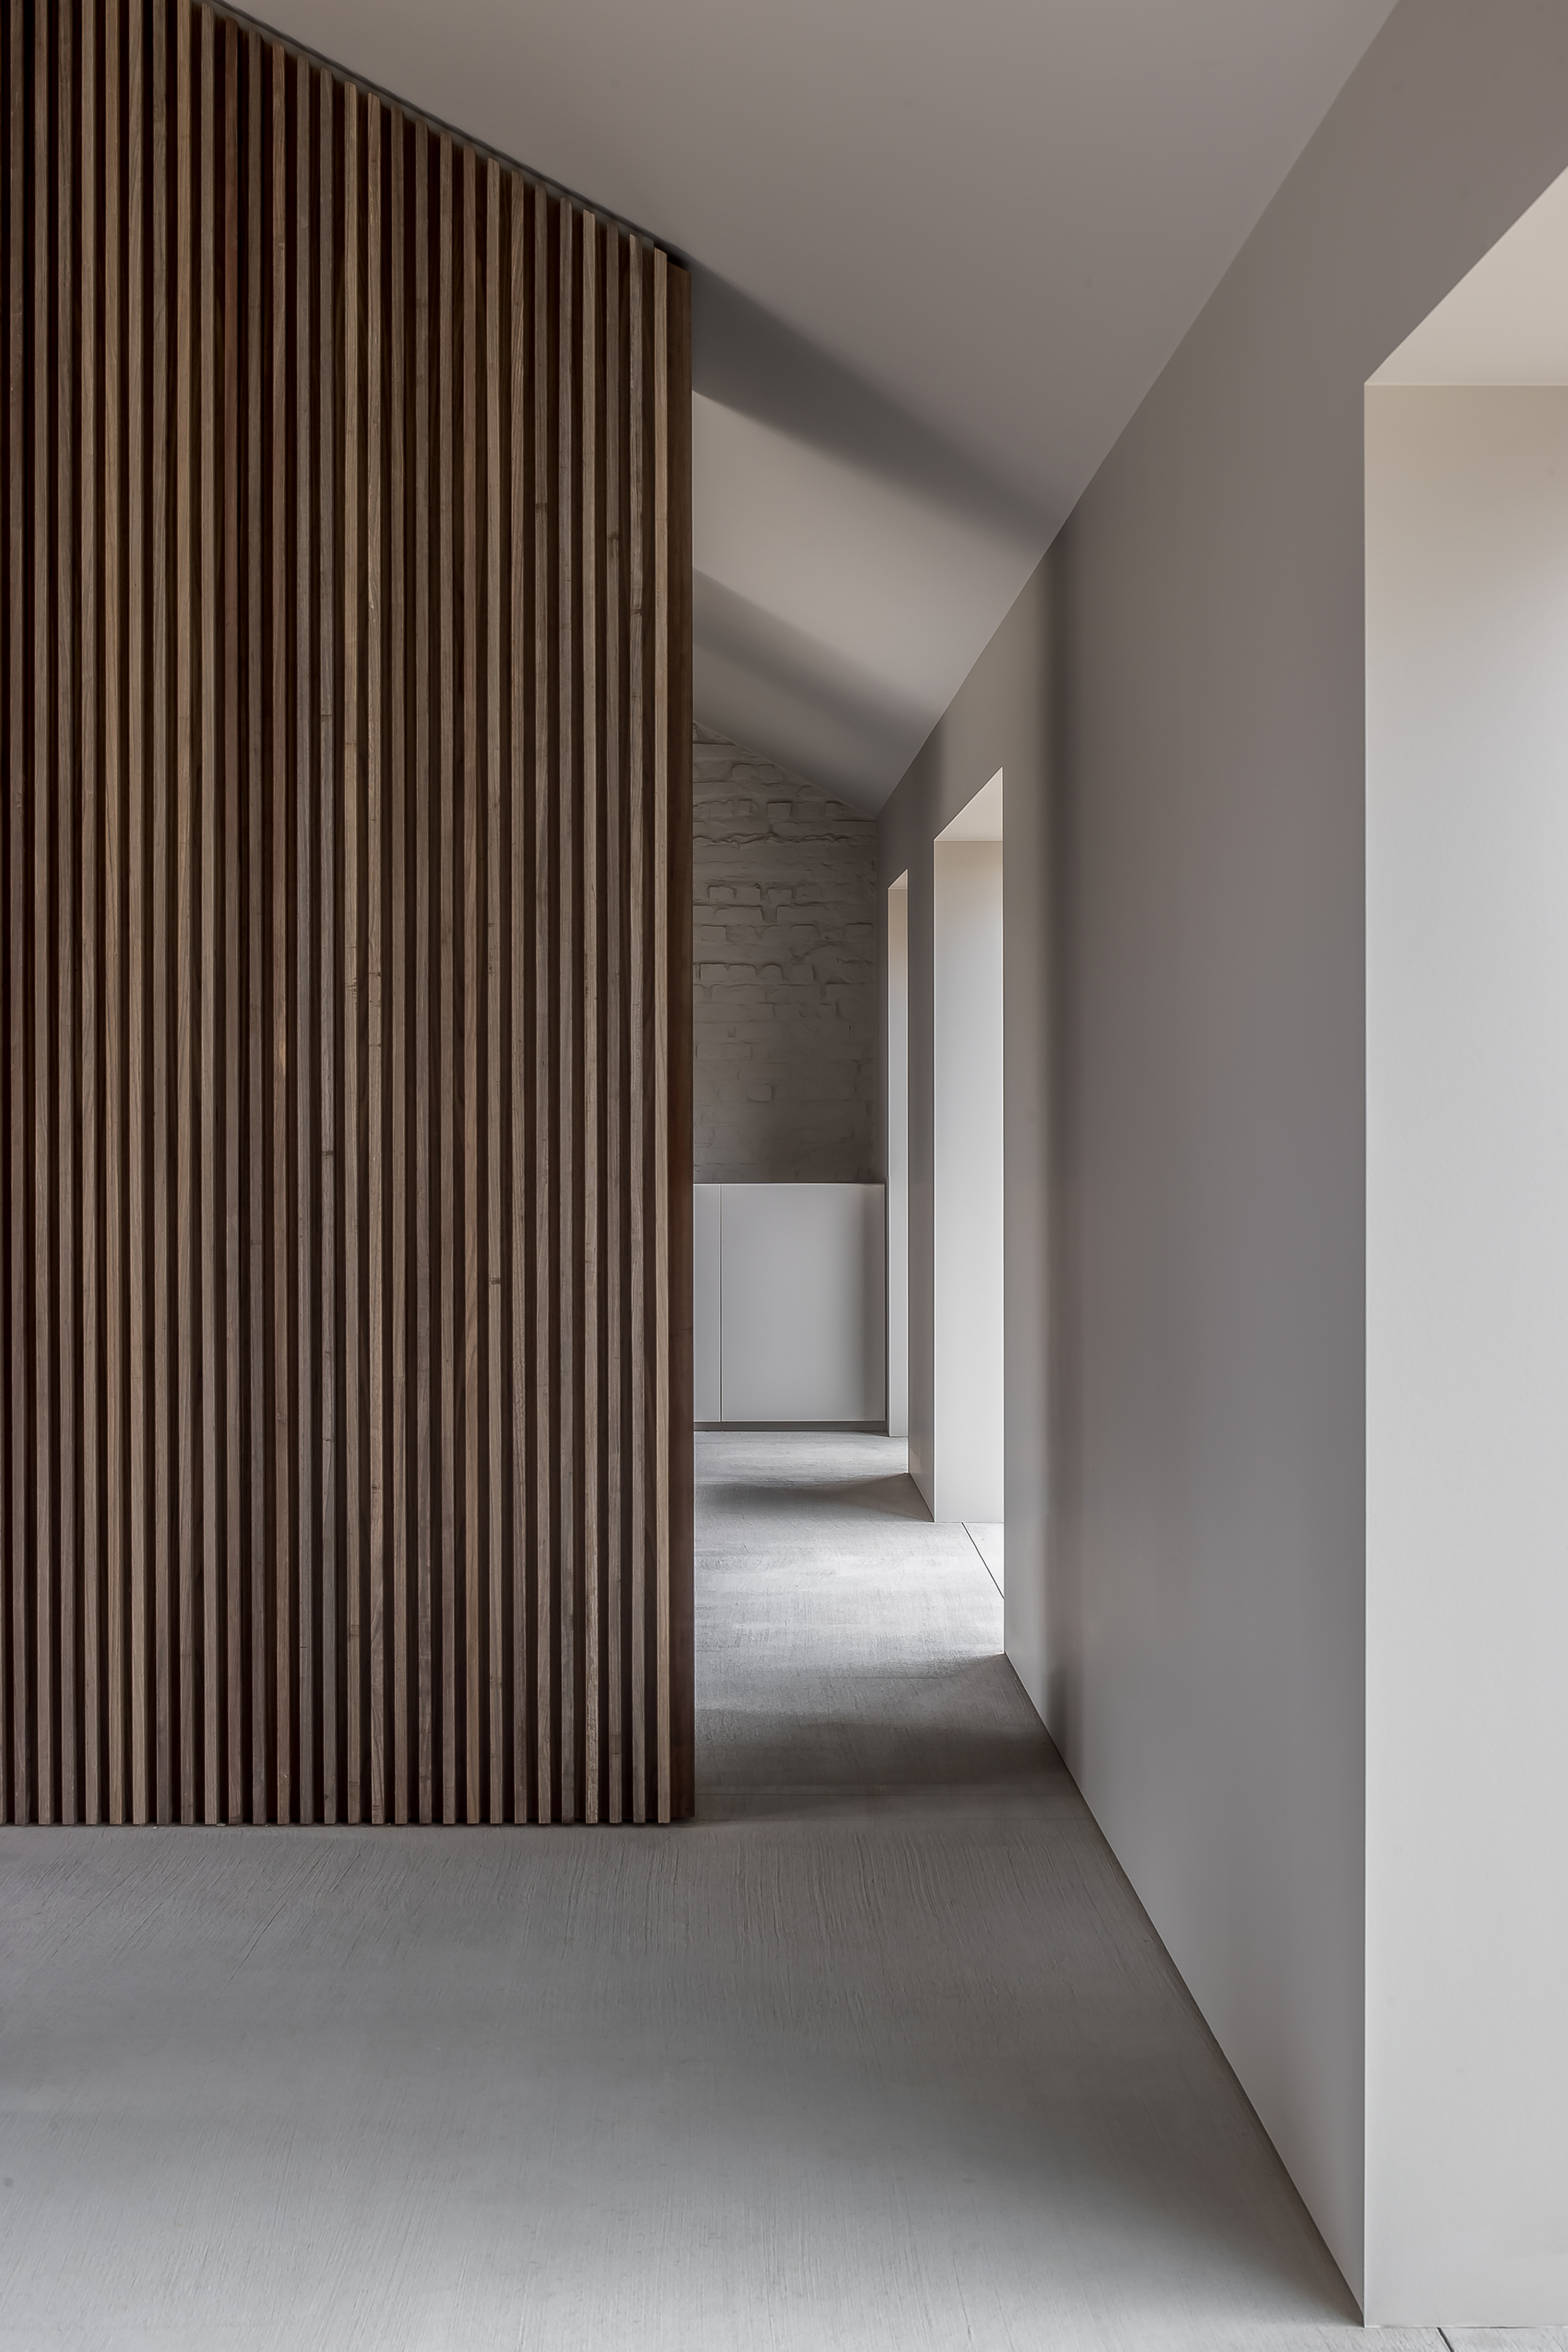 图片[4]|Moróro 户外概念公司新总部 / Minus Interior Architects|ART-Arrakis | 建筑室内设计的创新与灵感